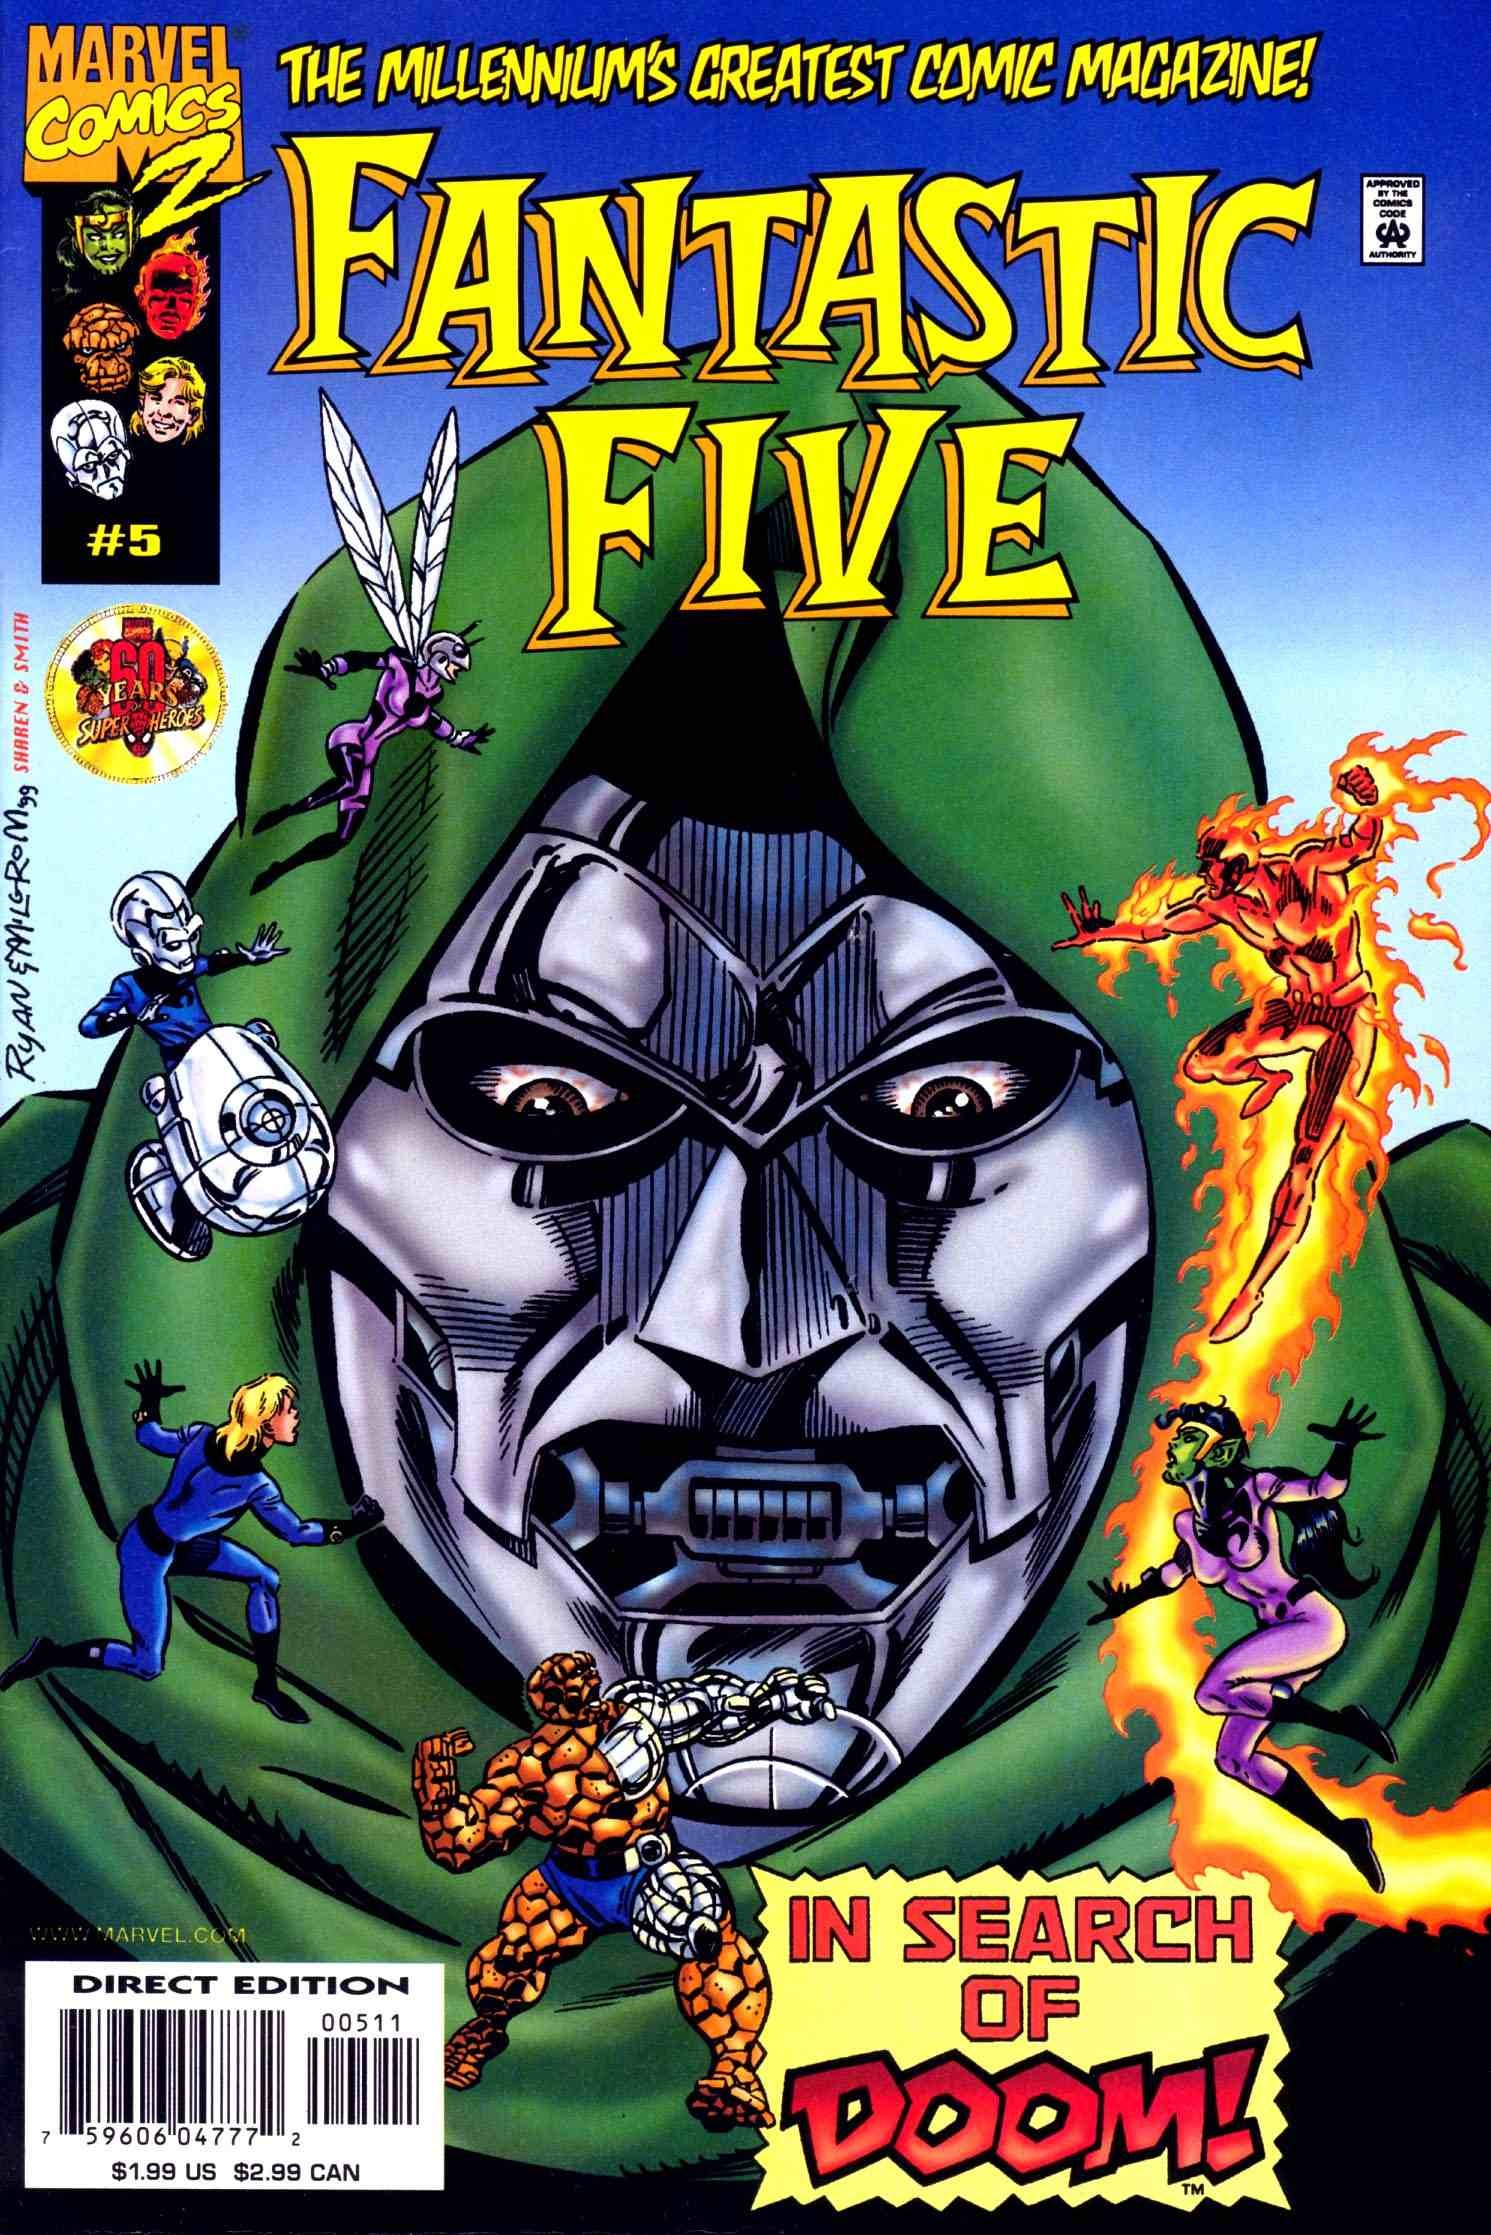 Fantastic Five Vol. 1 #5